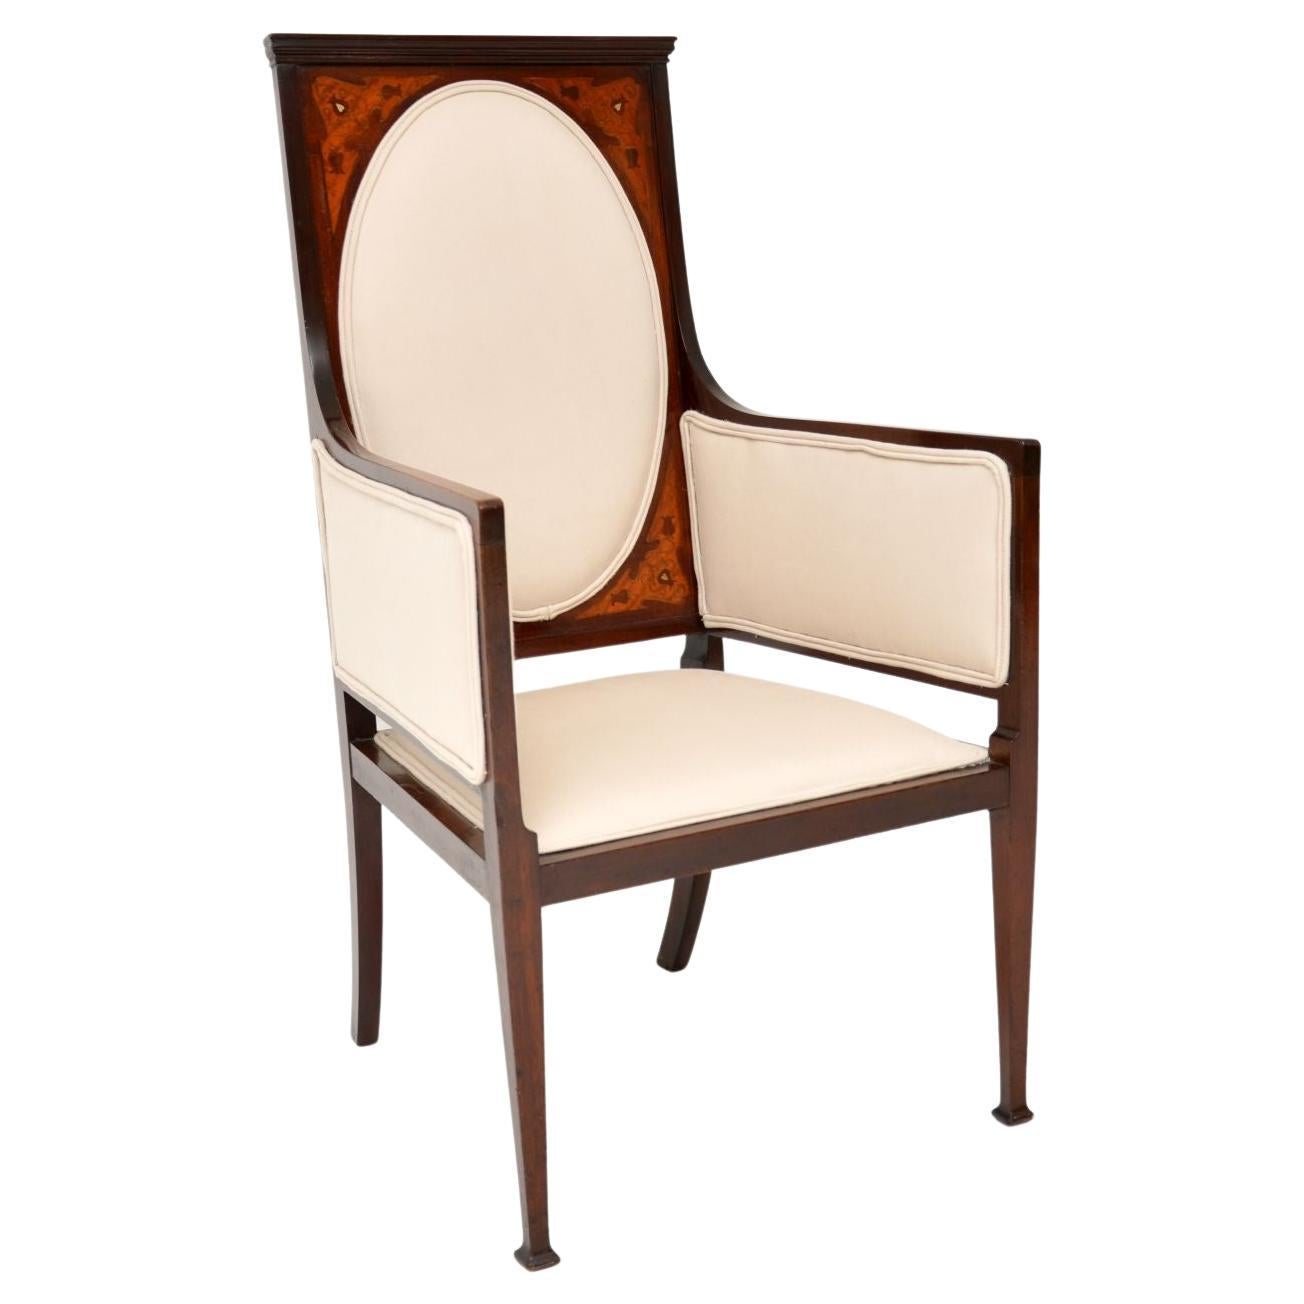 Antique English Art Nouveau Armchair For Sale